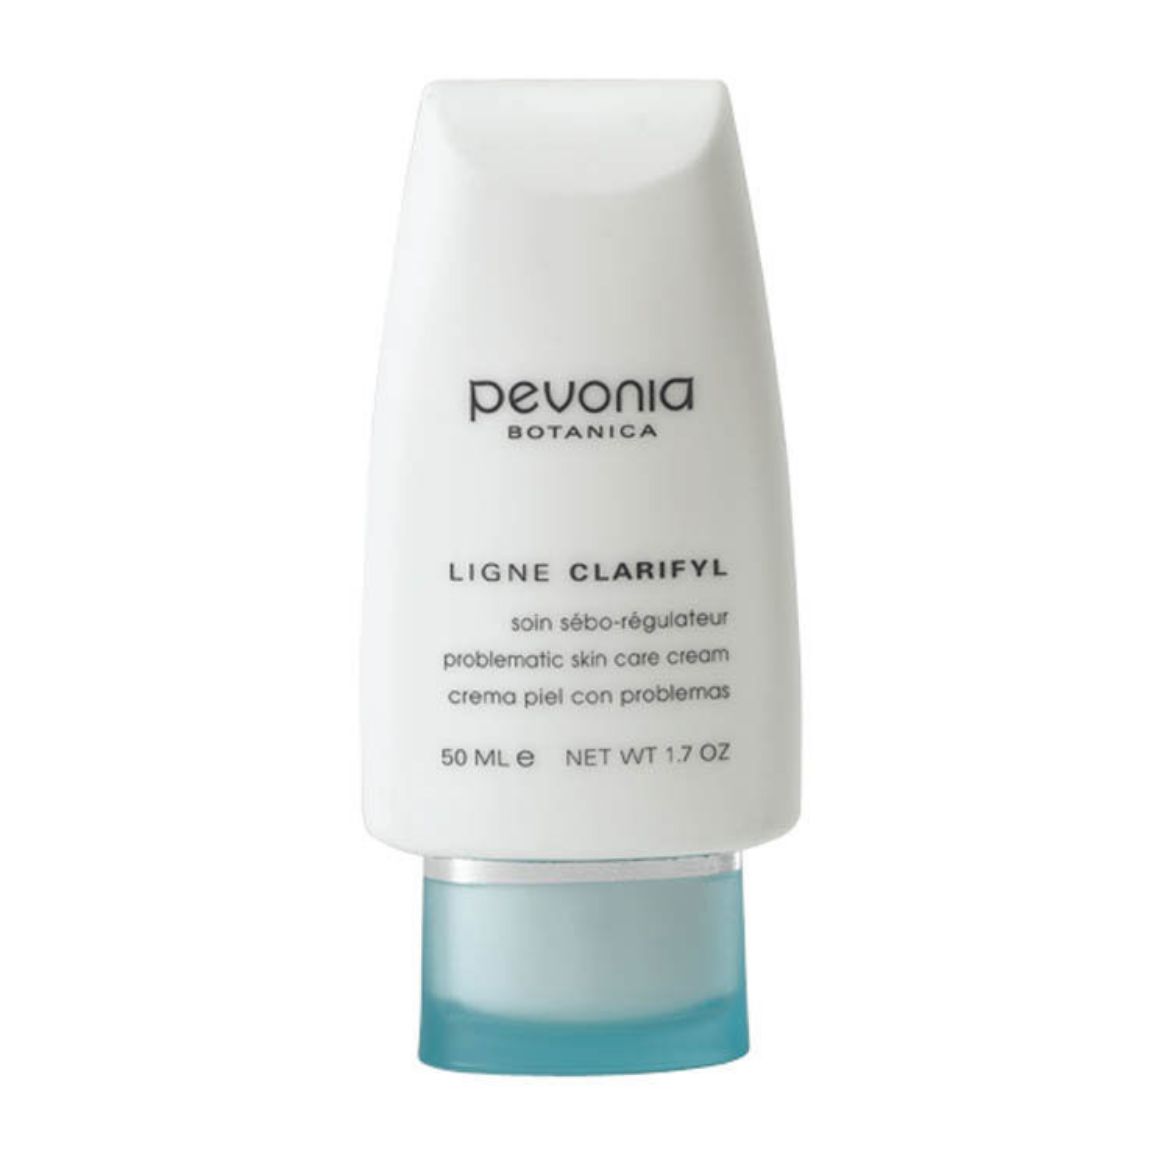 Bild von Pevonia Problematic Skin Care Cream (50ml)